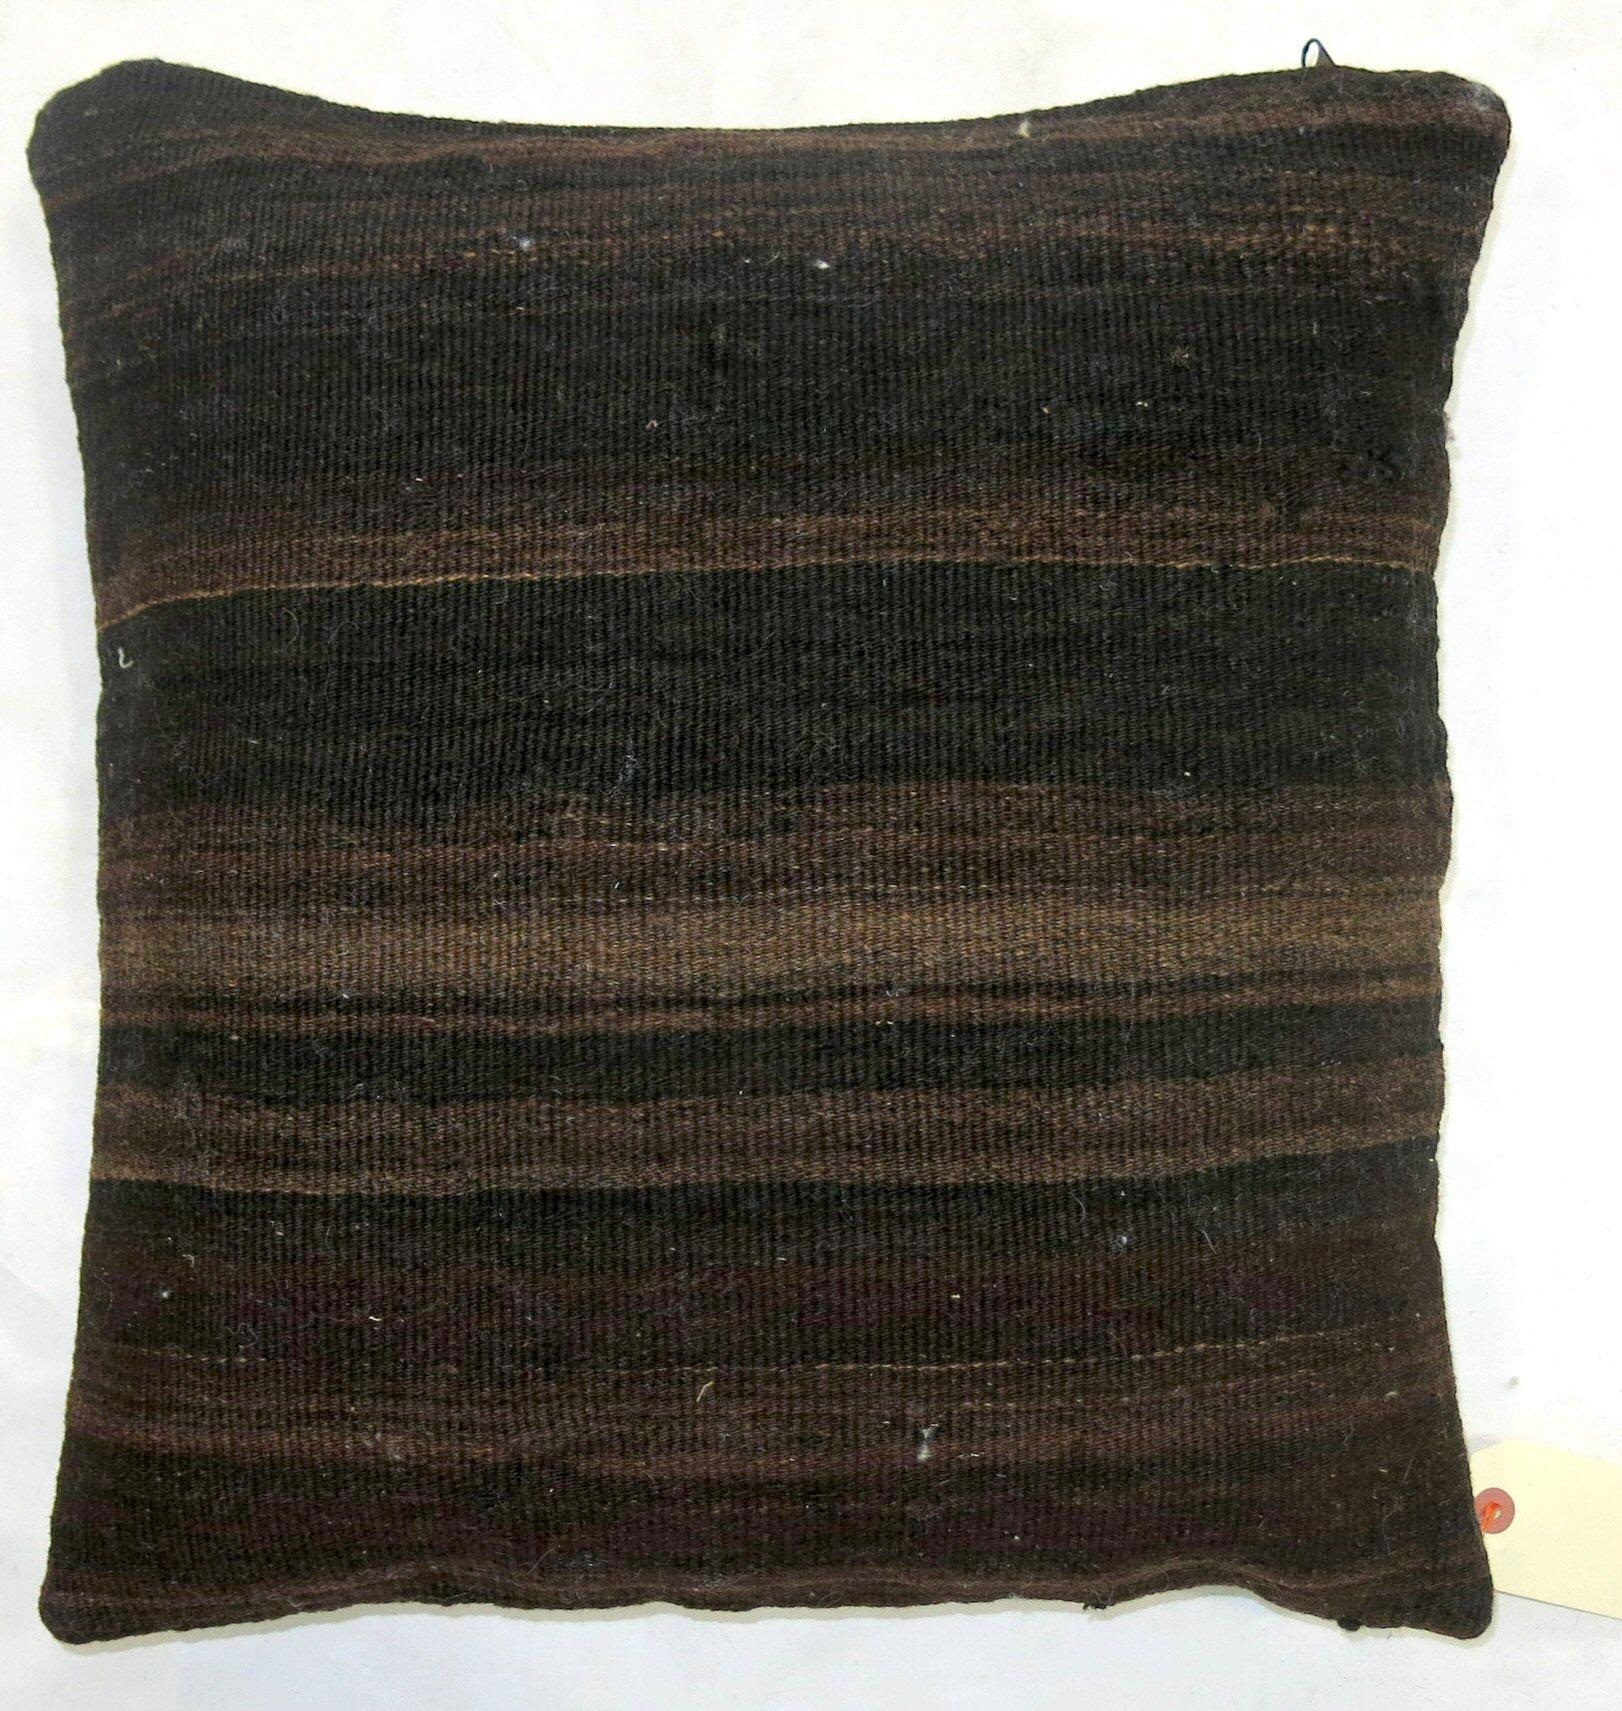 Coussin carré à double face fabriqué à partir d'un Kilim turc vintage à tissage plat.

Mesures : 18'' x 19''.